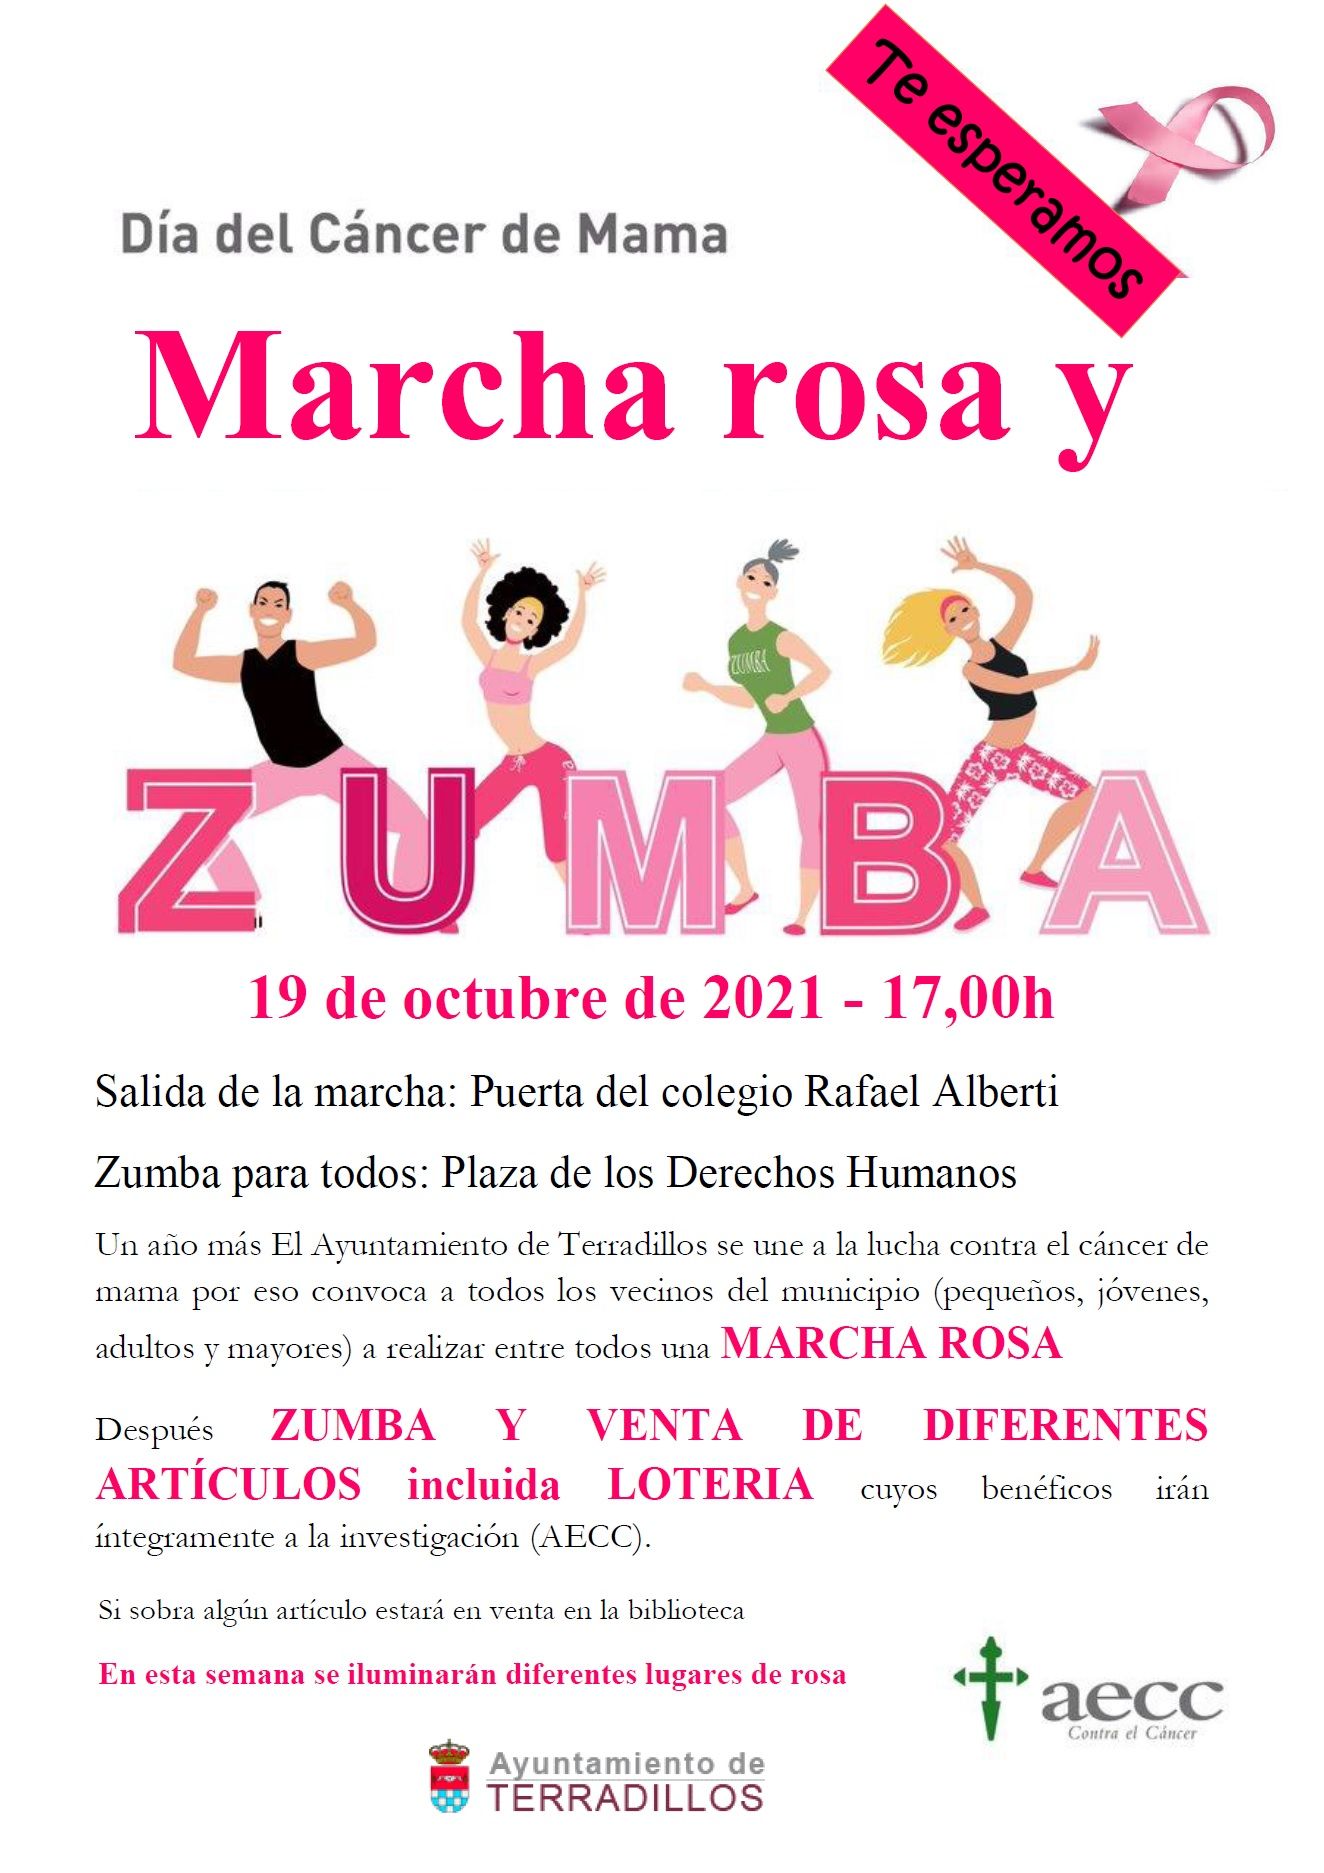 Cartel de la Marcha Rosa. Ayuntamiento de Terradillos.